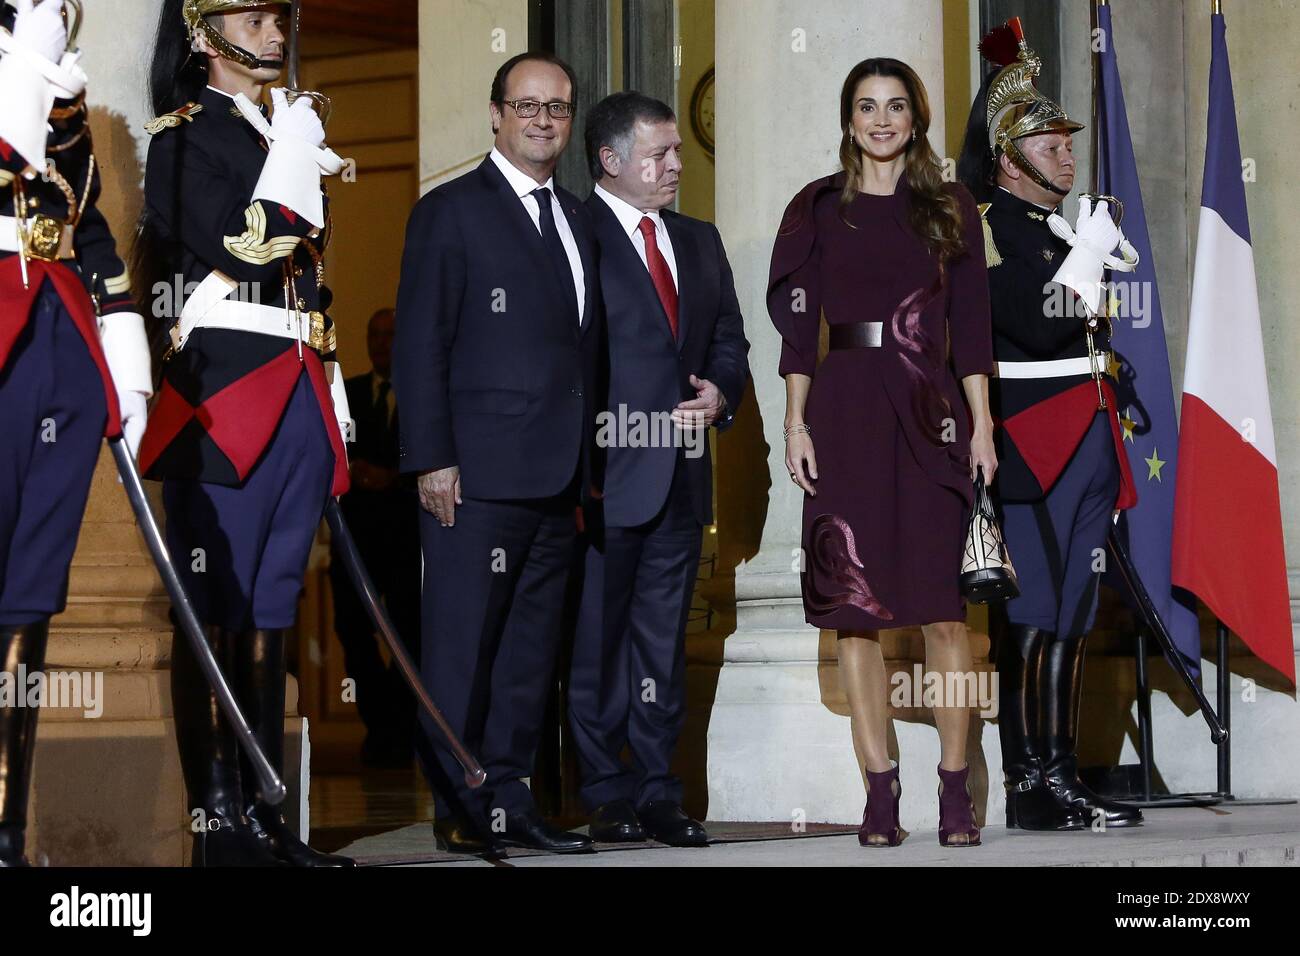 Le président français François Hollande accueille le roi de Jordanie Abdullah II et sa femme la reine Rania à leur arrivée au palais présidentiel de l'Elysée pour un dîner, à Paris, en France, le 17 septembre 2014. Photo de Stephane Lemouton/ABACAPRESS.COM Banque D'Images